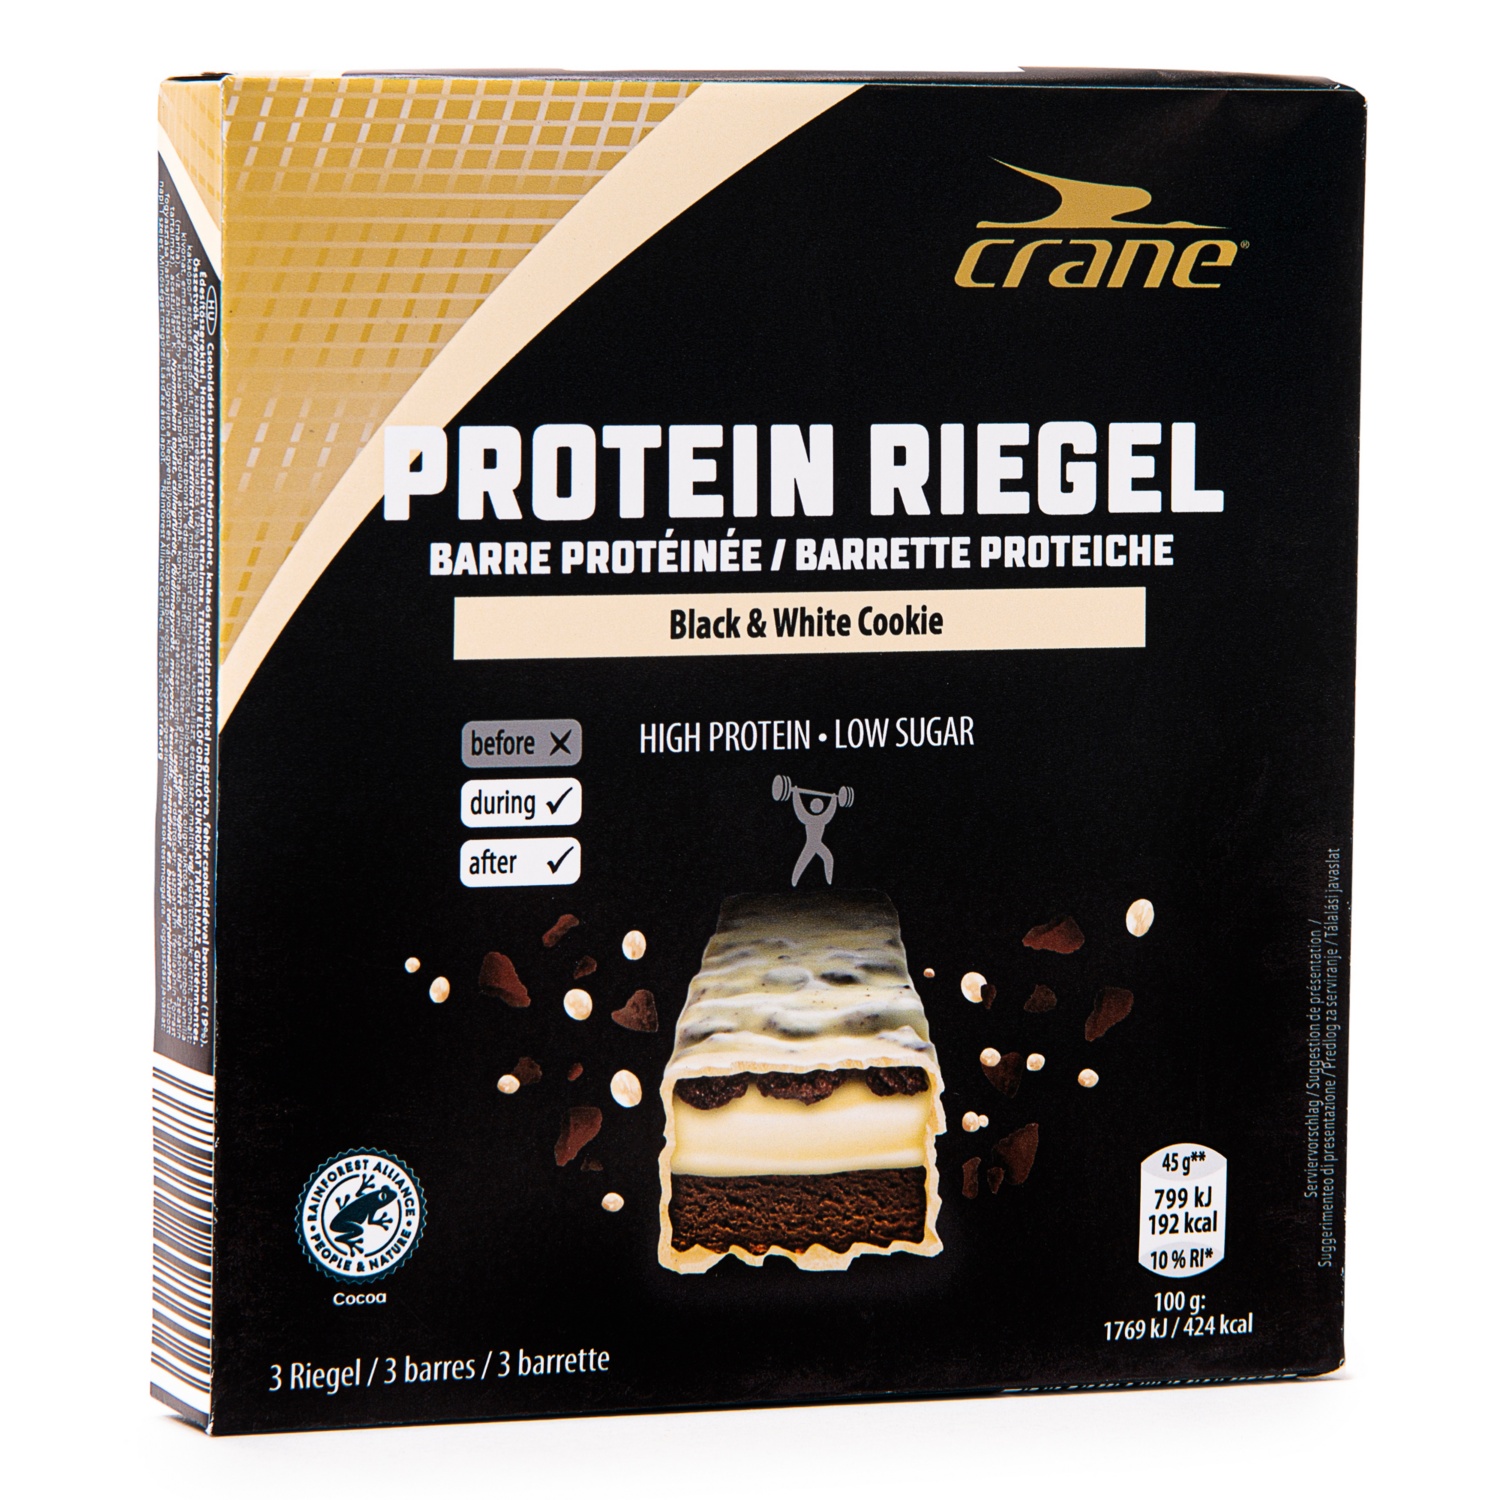 CRANE Protein Riegel "Cookie Concept", Black & White